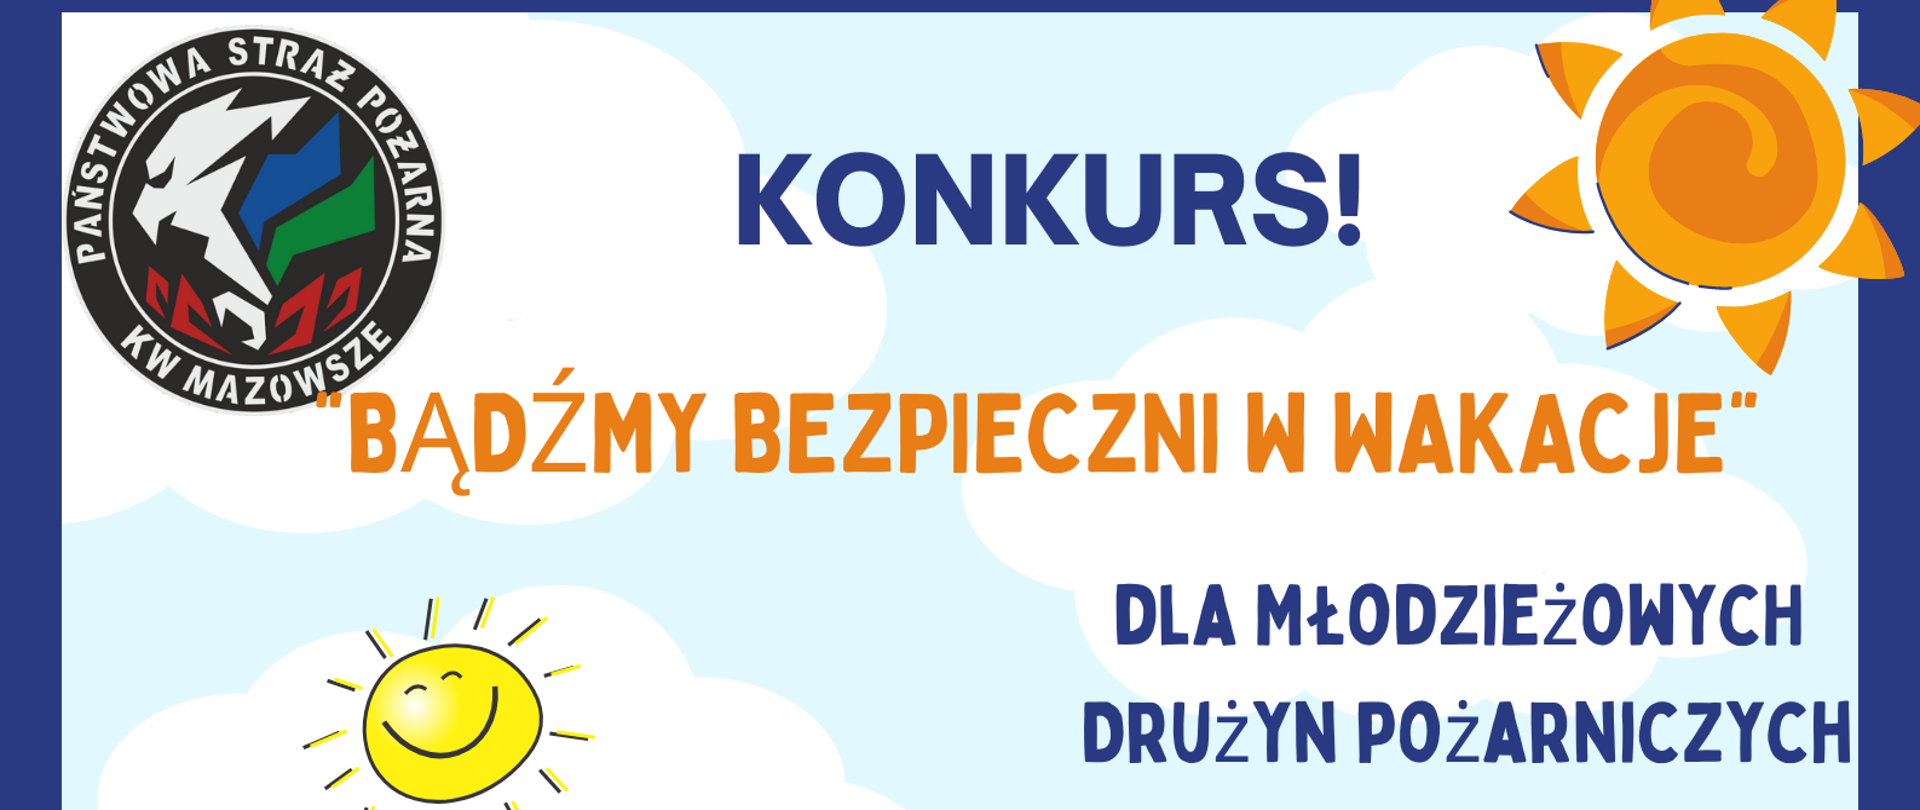 Plakat konkursu organizowanego przez Mazowieckiego Komendanta Wojewódzkiego "Bądźmy bezpieczni w wakacje".